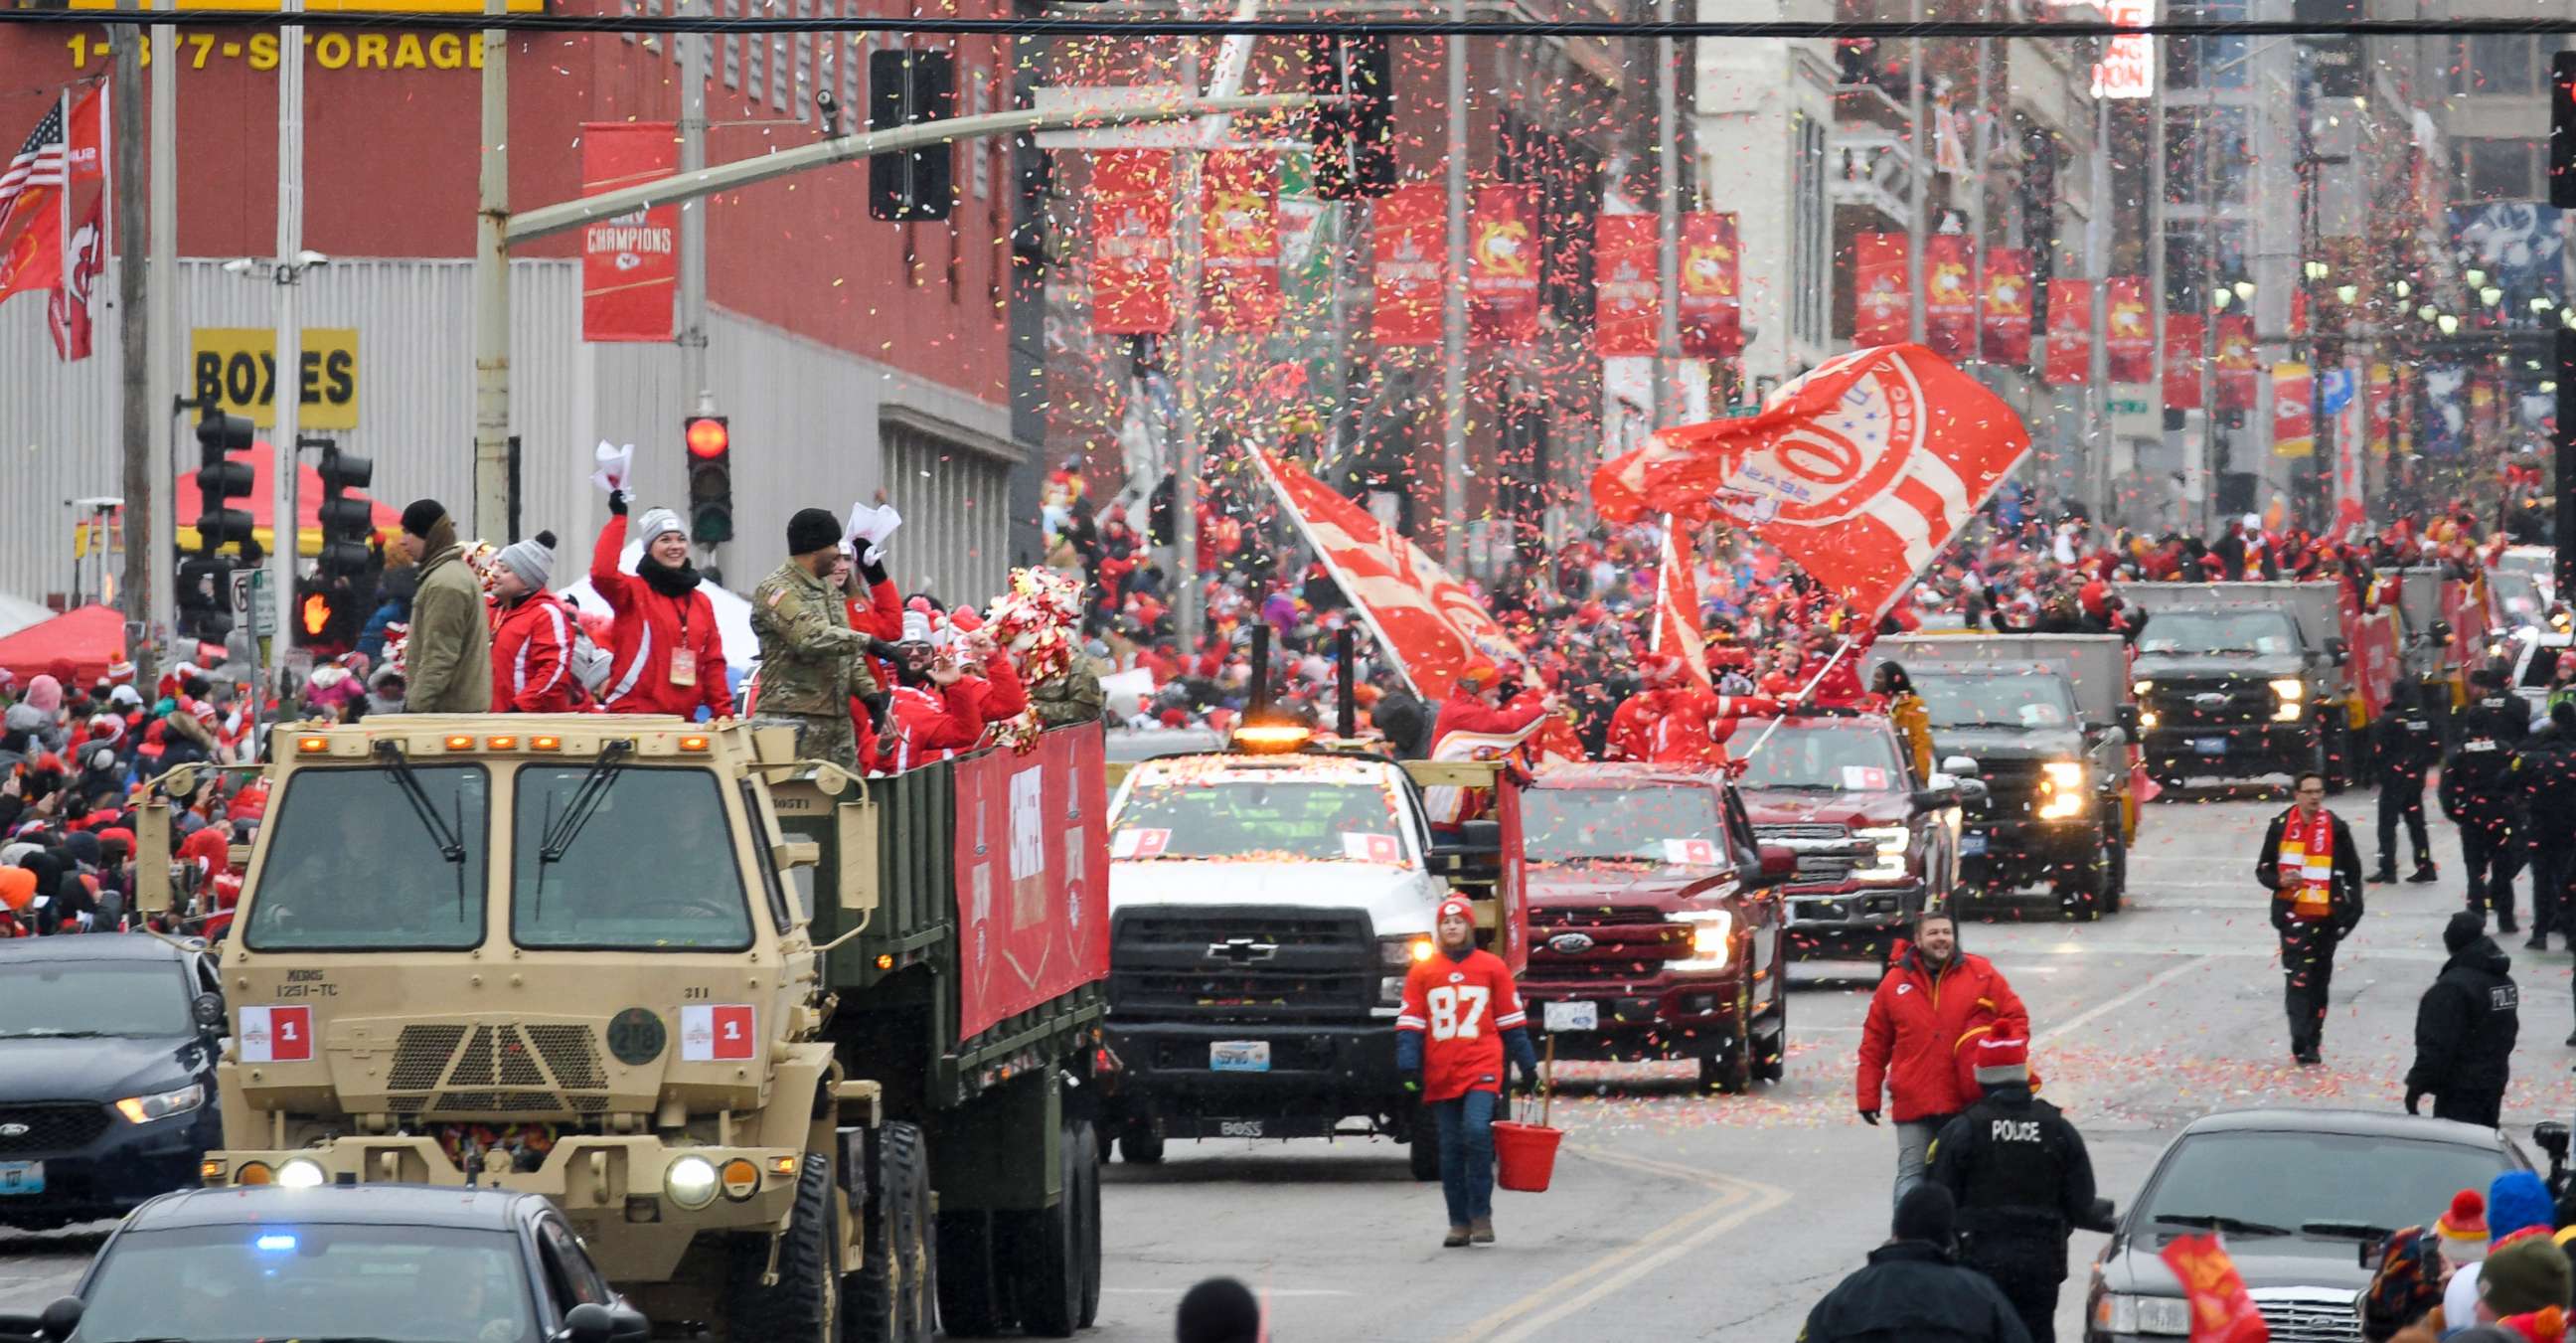 Kansas City Chiefs Super Bowl parade: Live updates